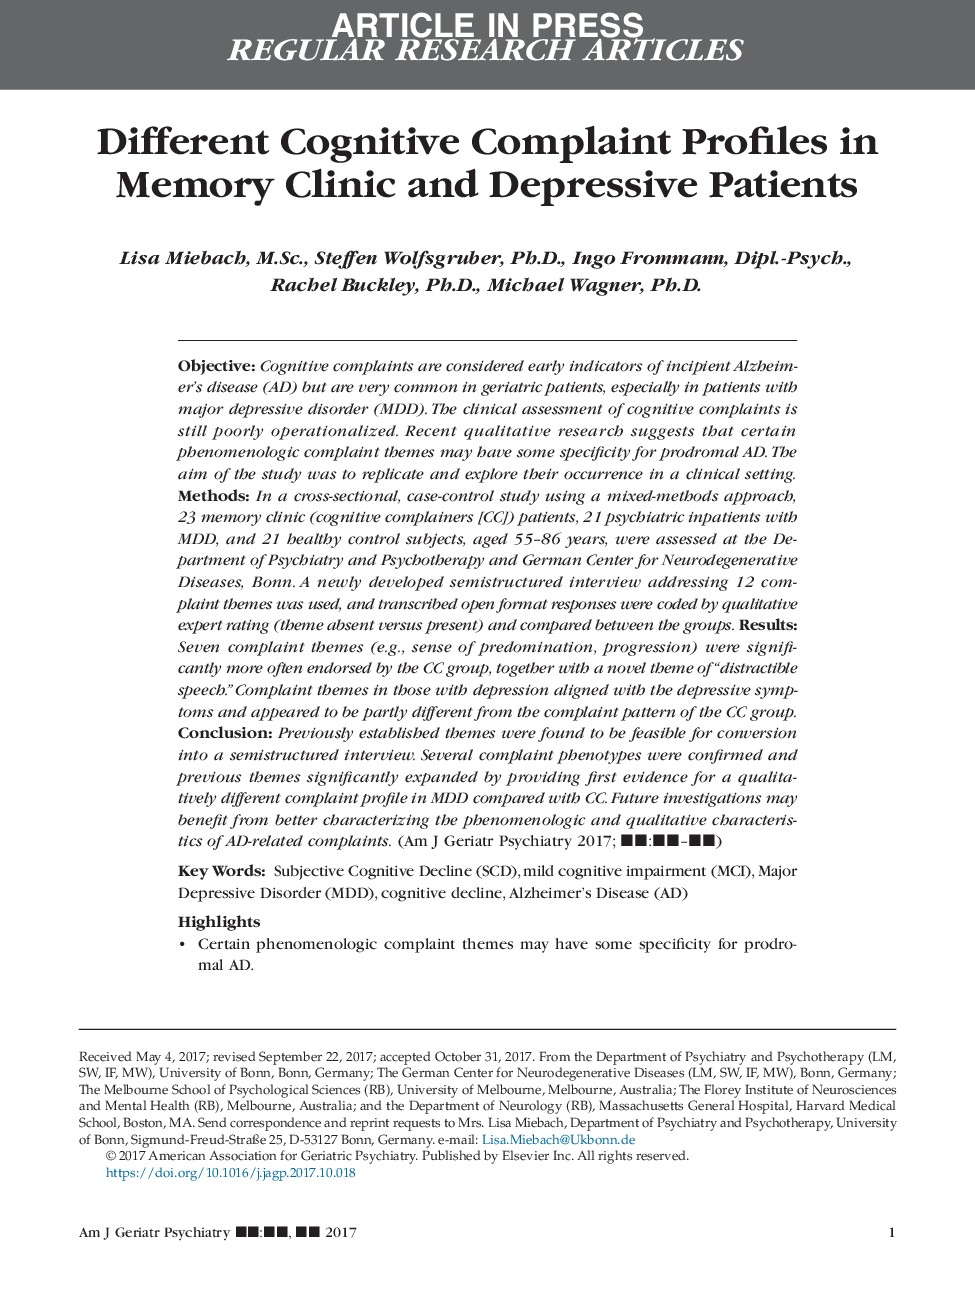 پروفایل های مختلف شکایت شناختی در کلینیک حافظه و بیماران افسردگی 